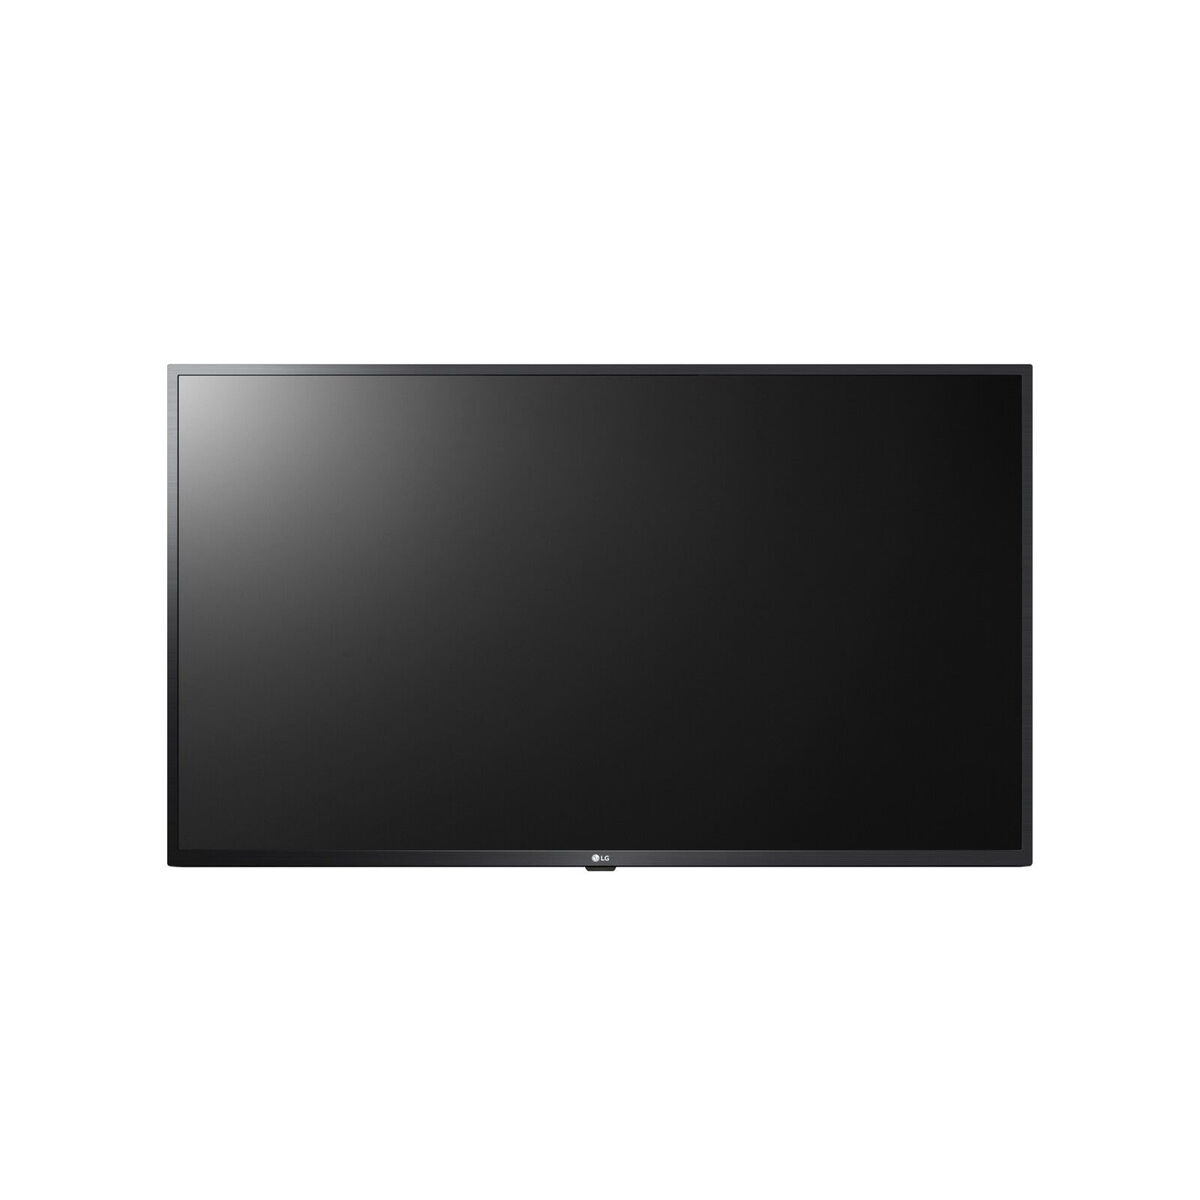 Osta tuote Näyttö Videowall LG 55US662H 55″ LED LCD 60 Hz 50-60  Hz verkkokaupastamme Korhone: Tietokoneet & Elektroniikka 10% alennuksella koodilla KORHONE